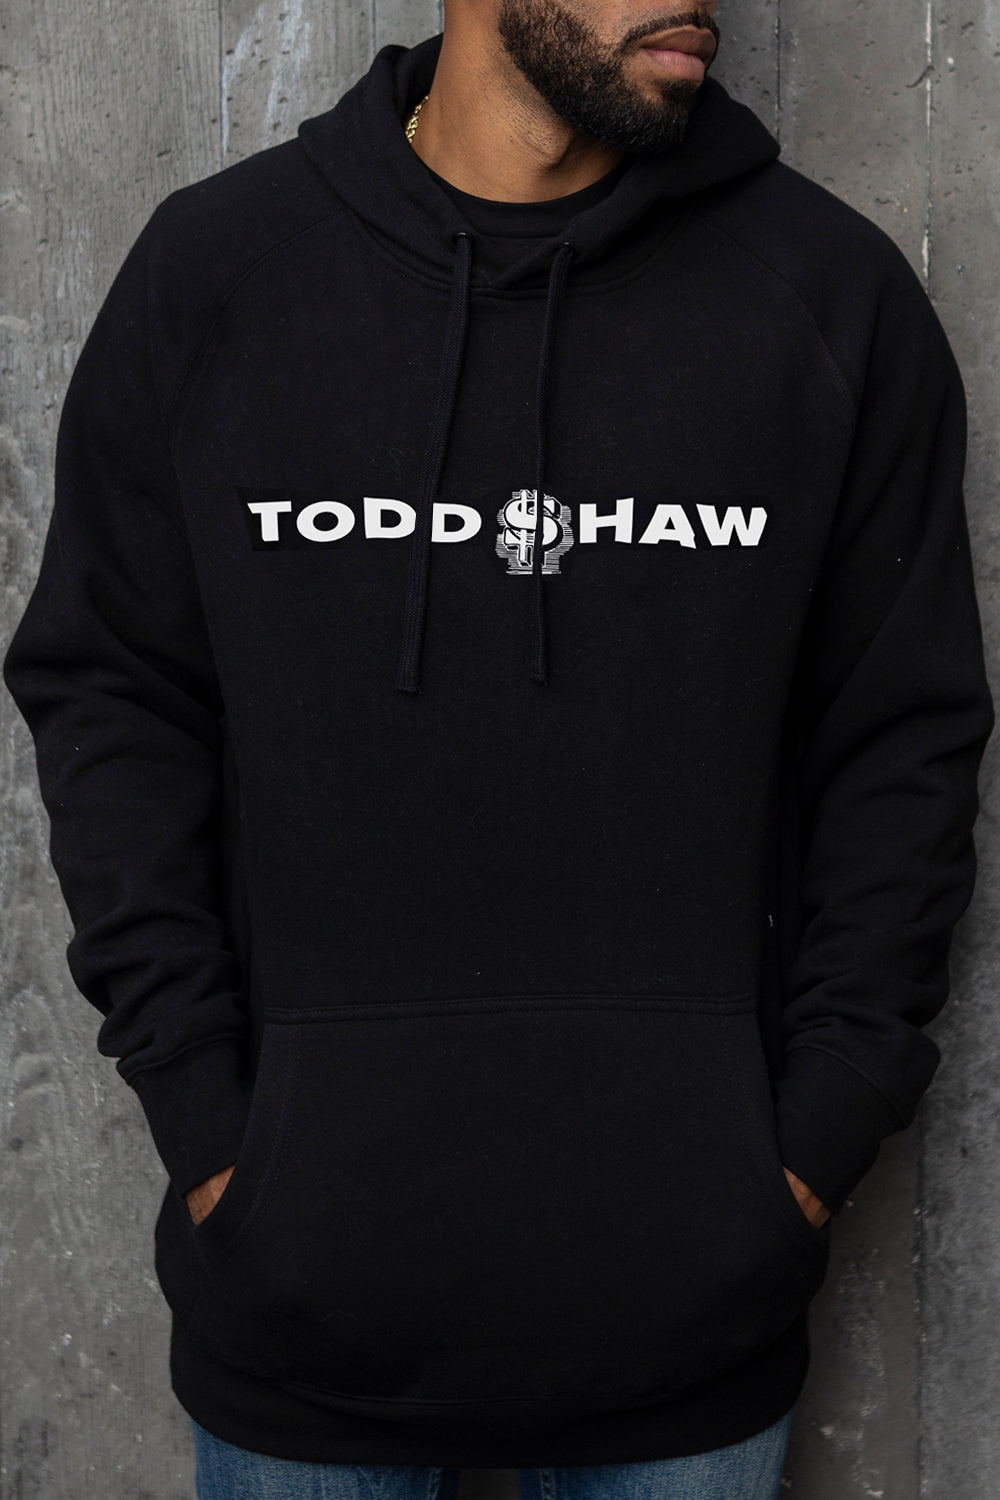 Todd $haw - Hoodie (Black) – Too $hort